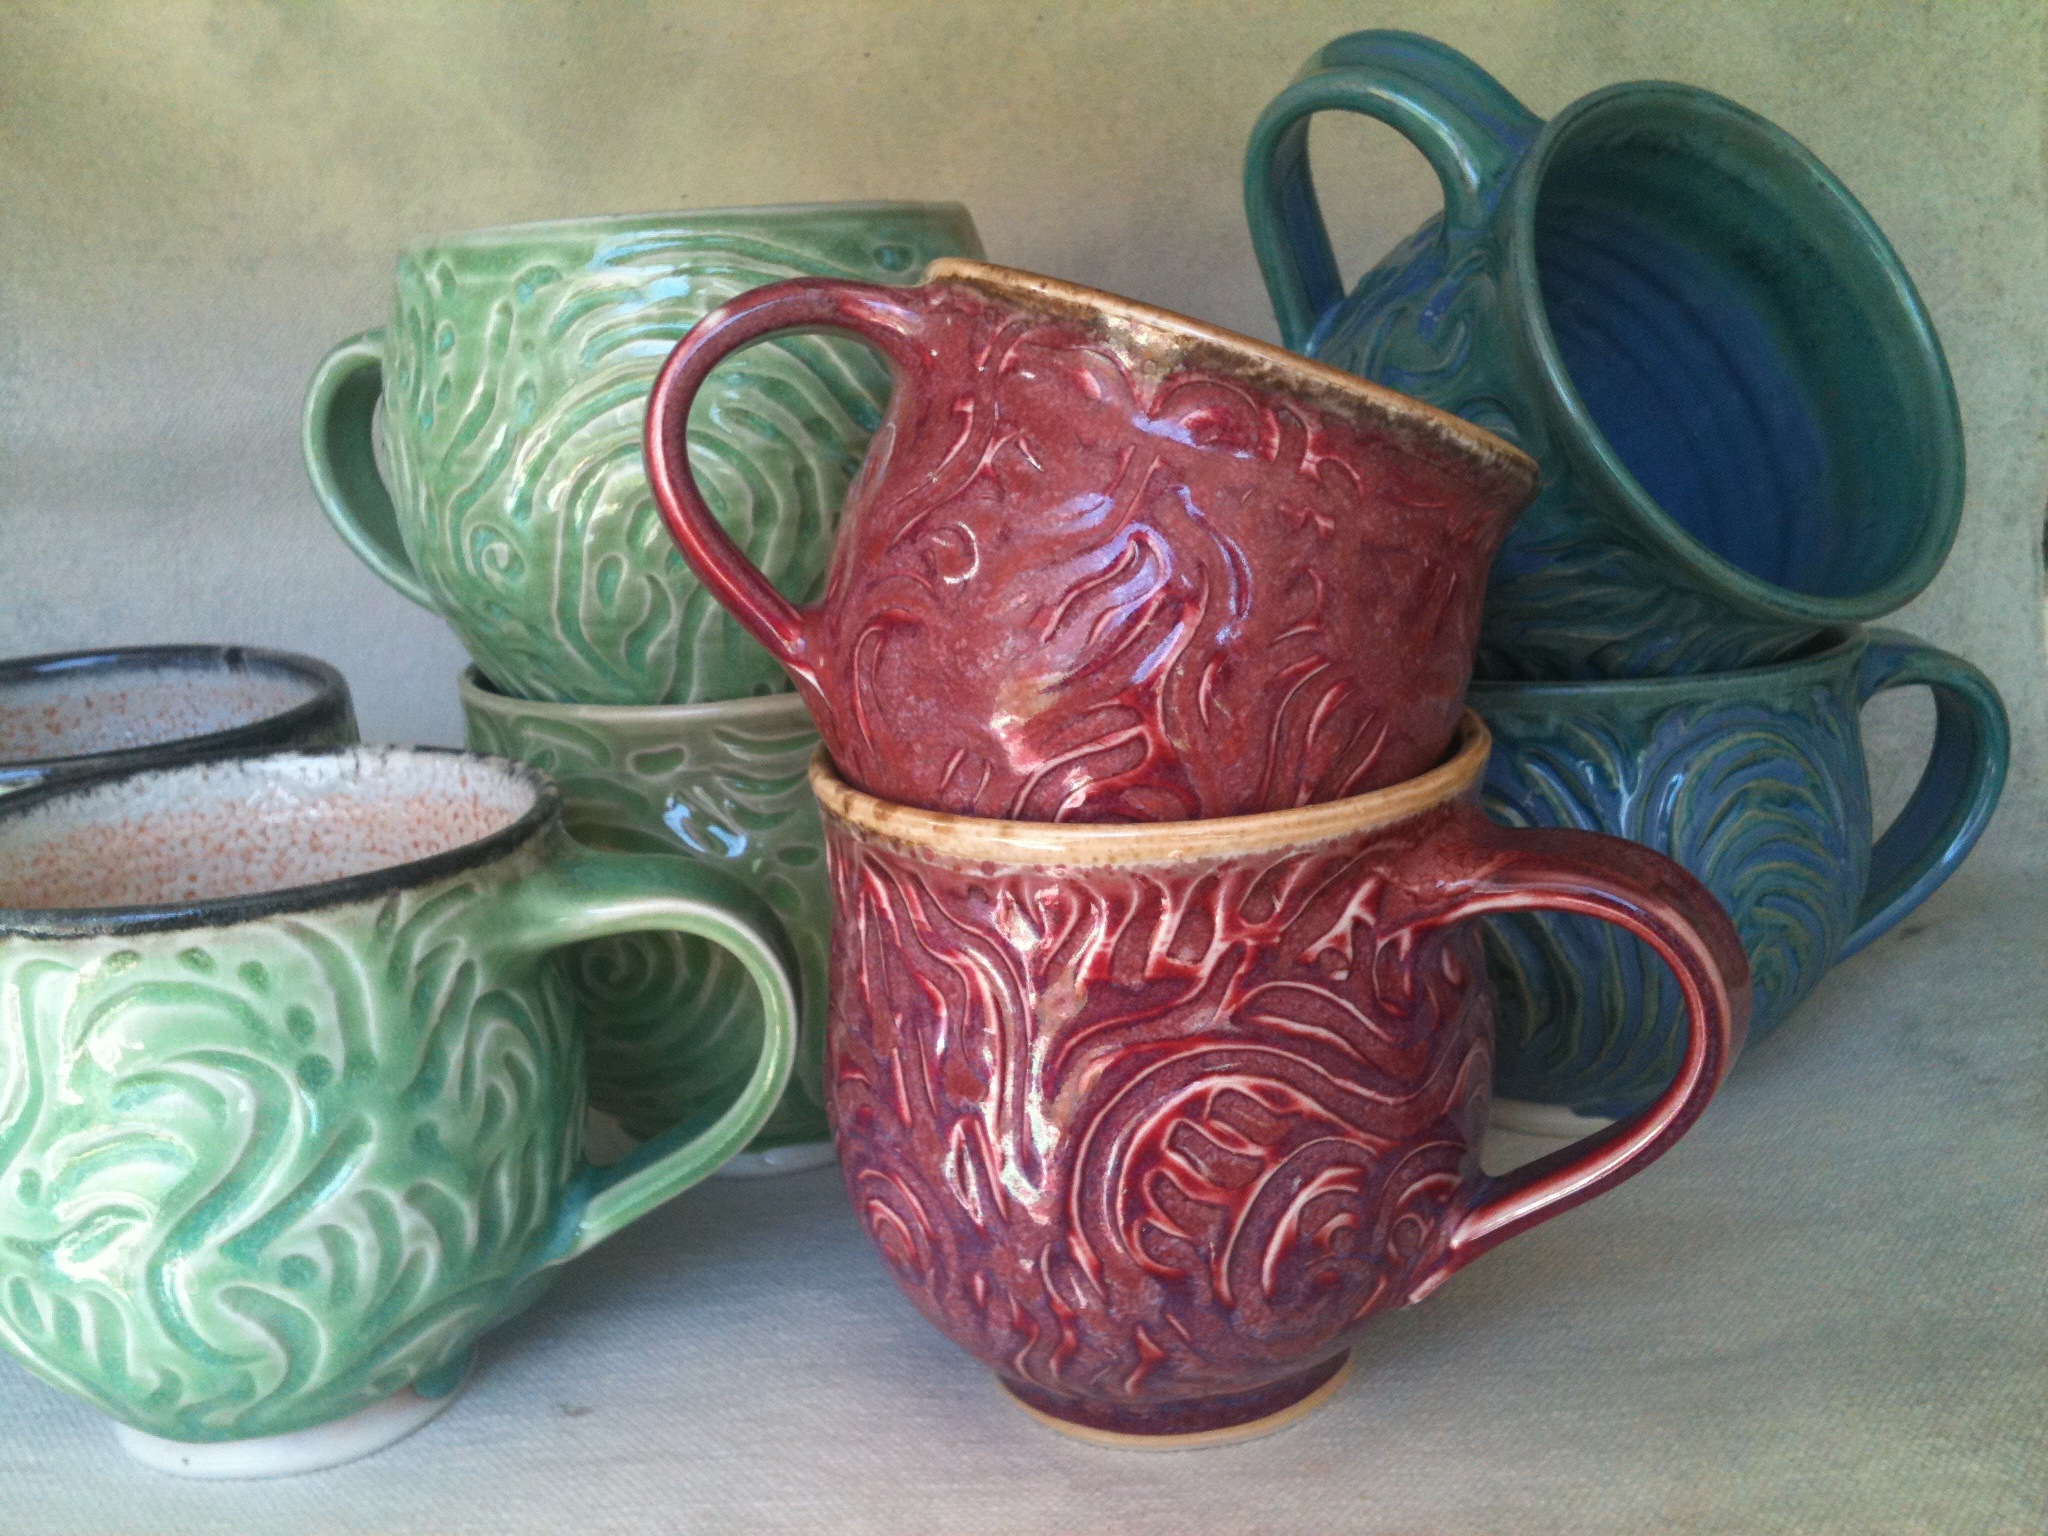 Carved porcelain mugs